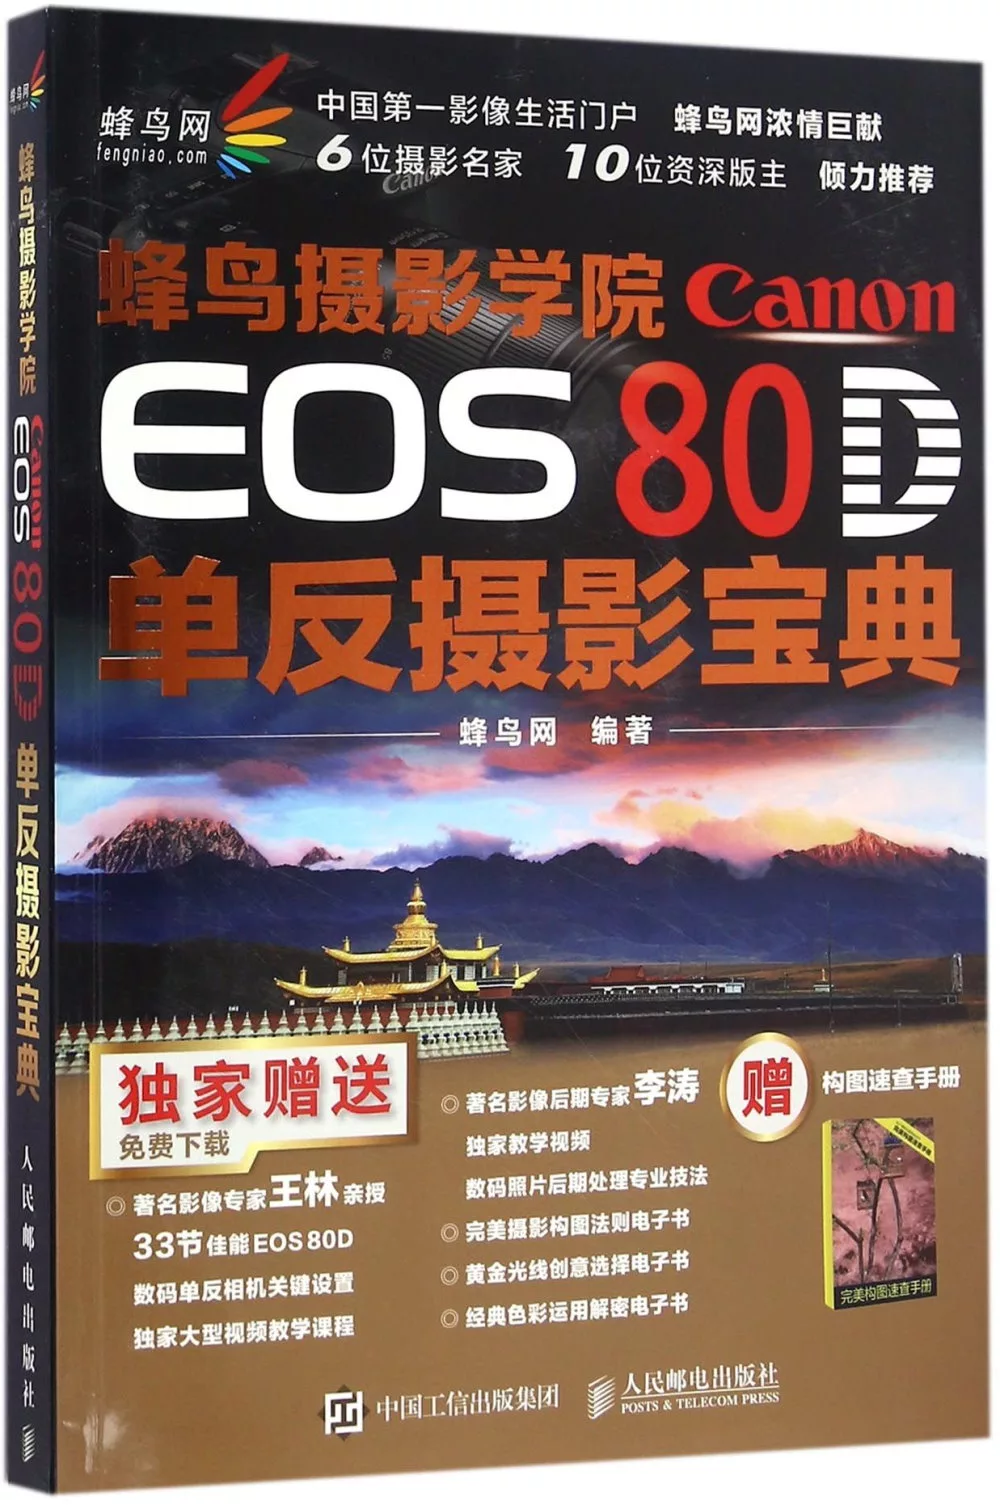 蜂鳥攝影學院Canon EOS 80D單反攝影寶典